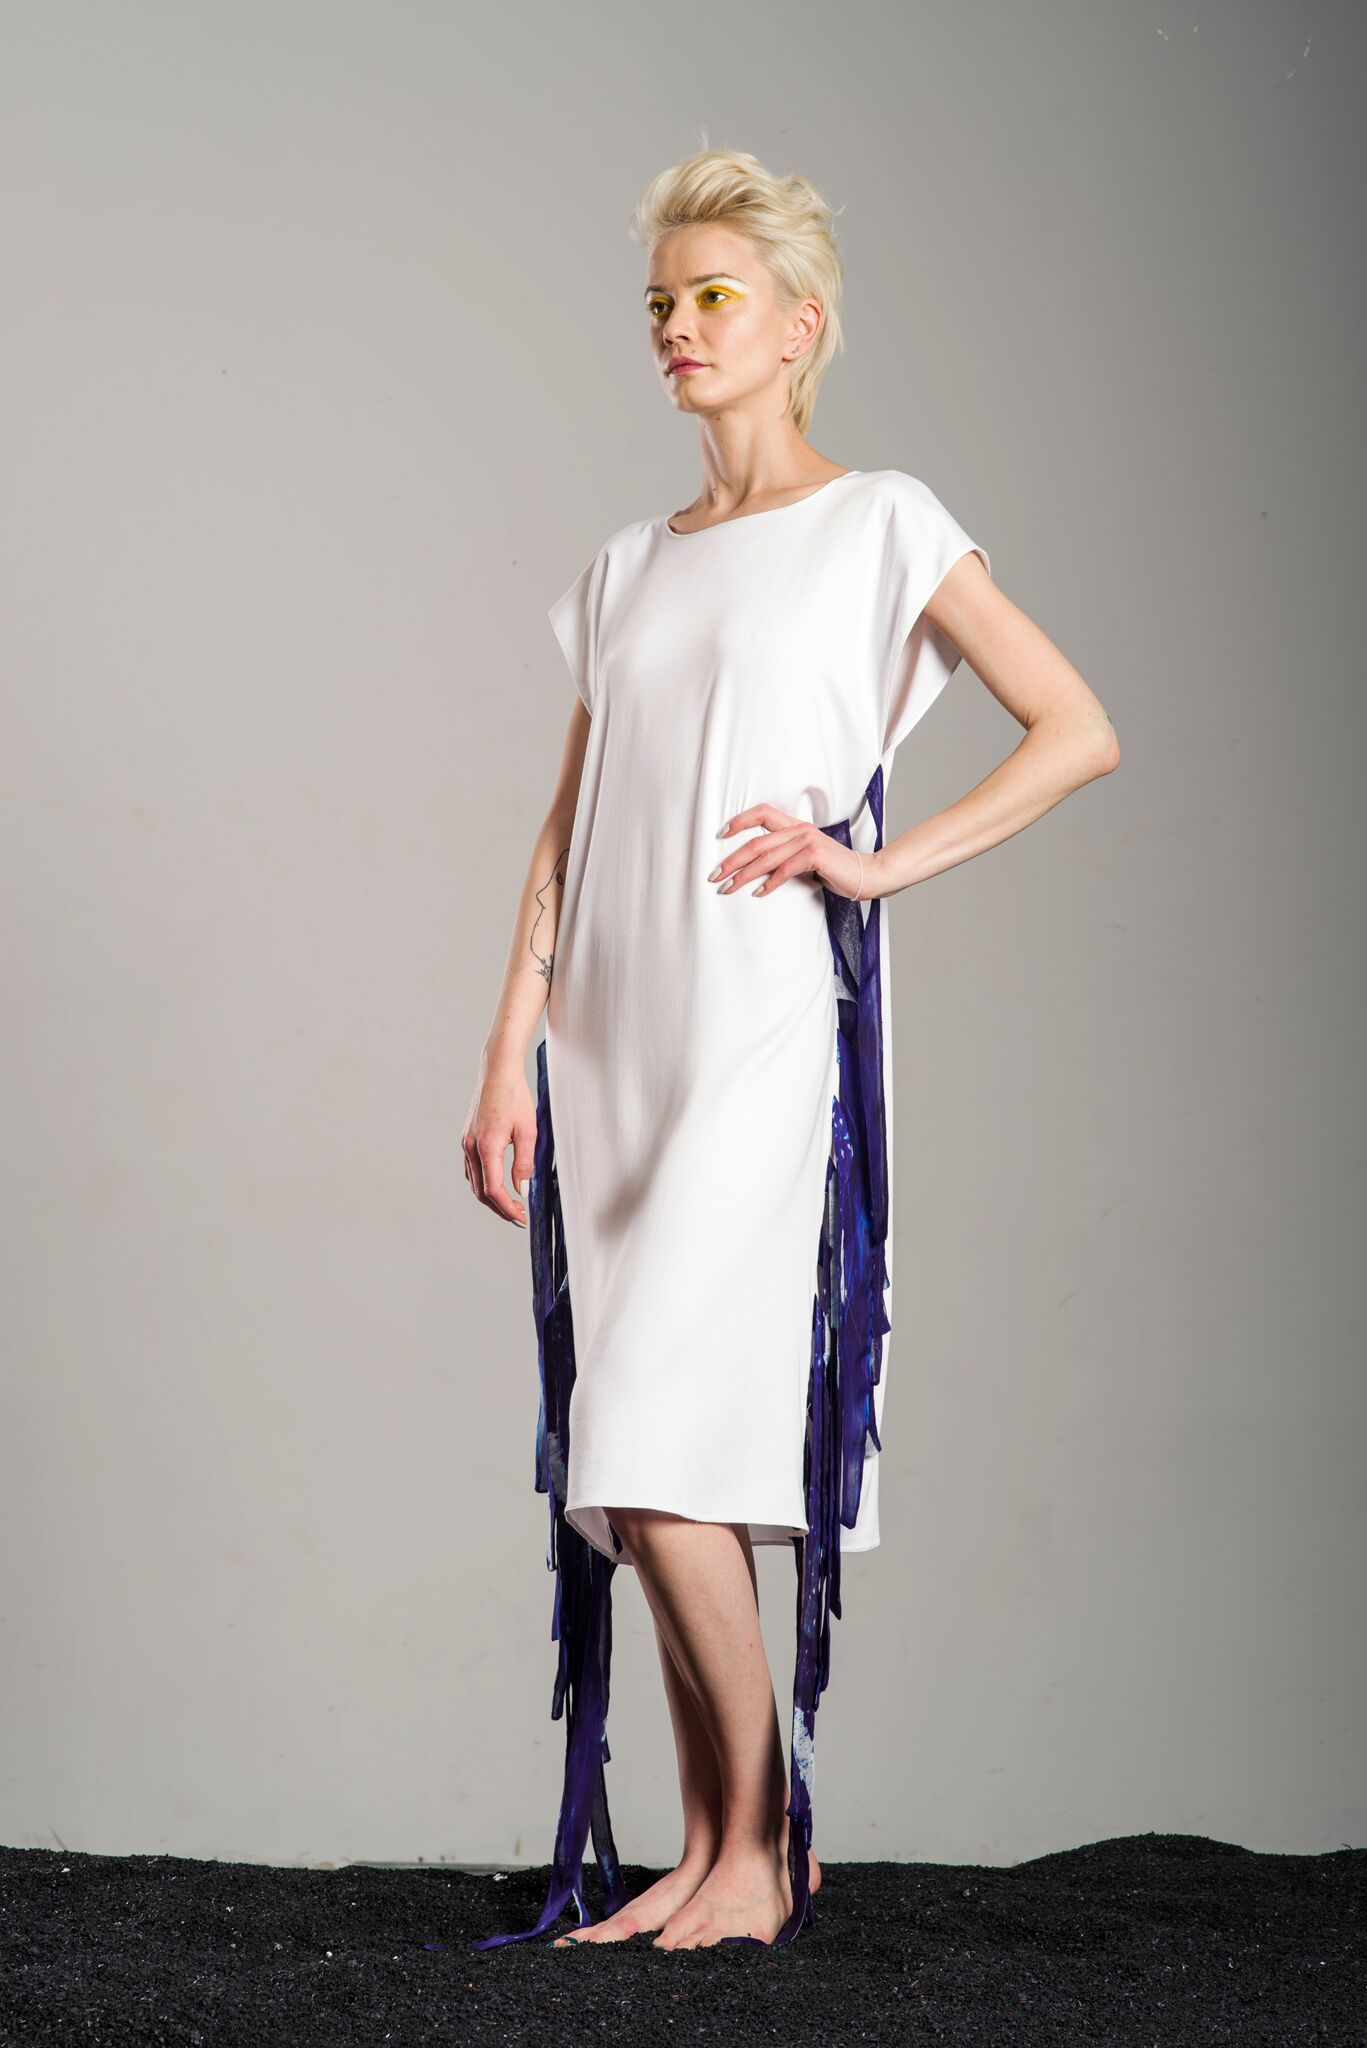 Mara Dress - The Clothing LoungeCorina Boboc